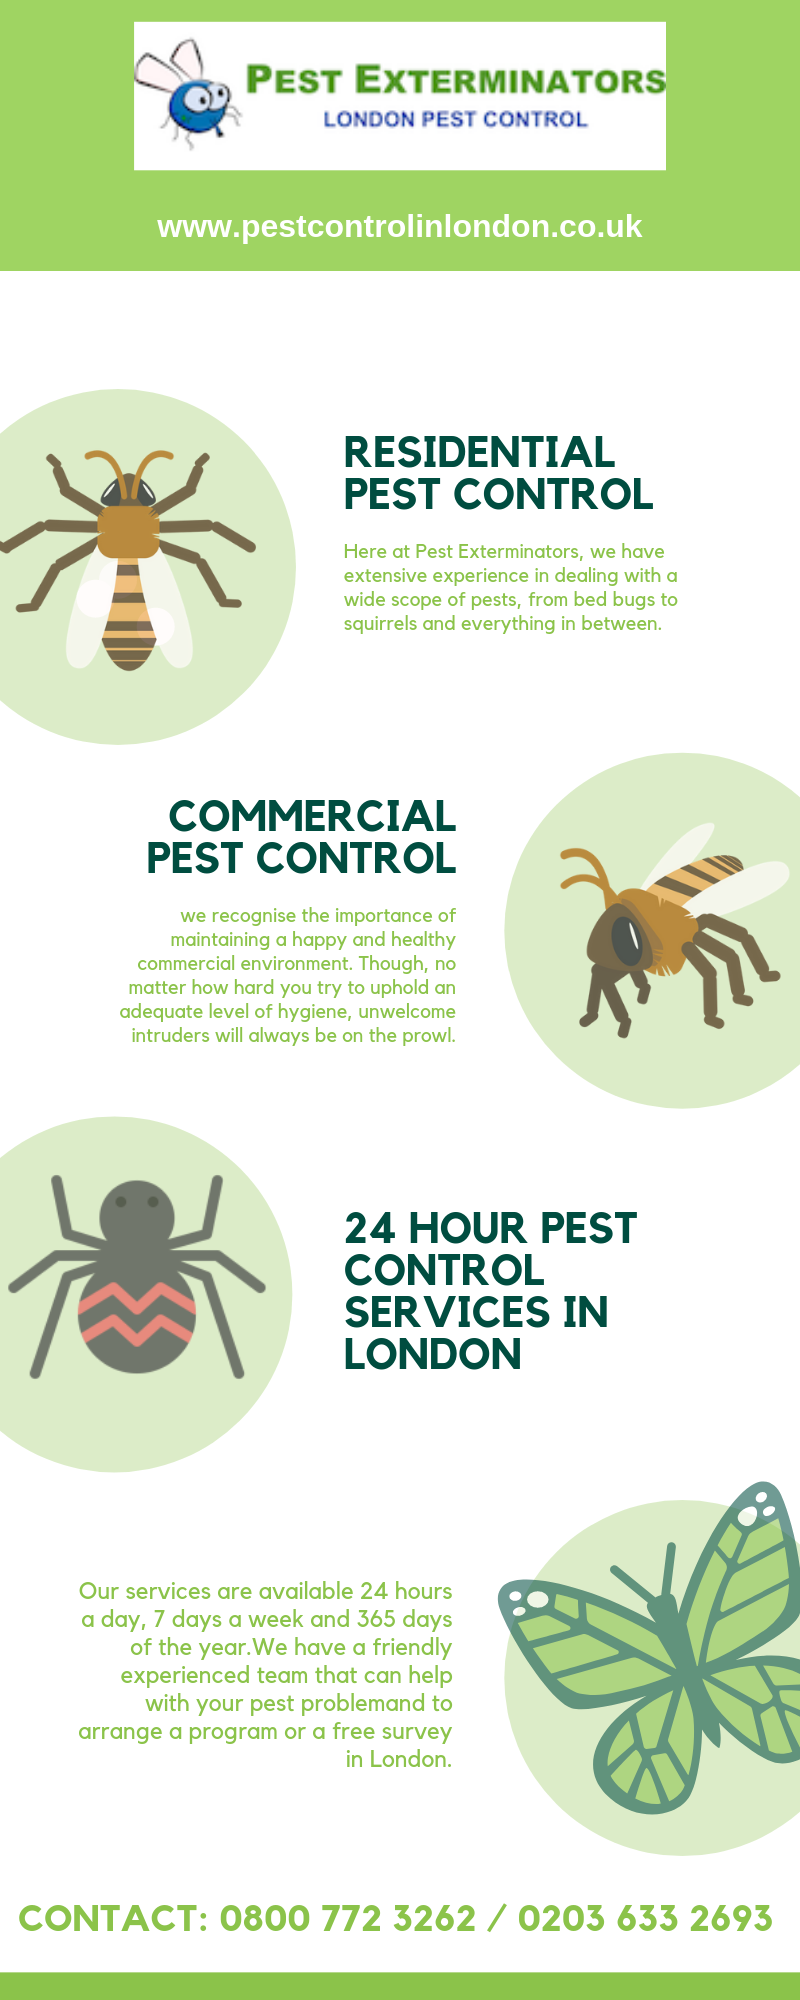 Pest Control Services Elizabeth Nj